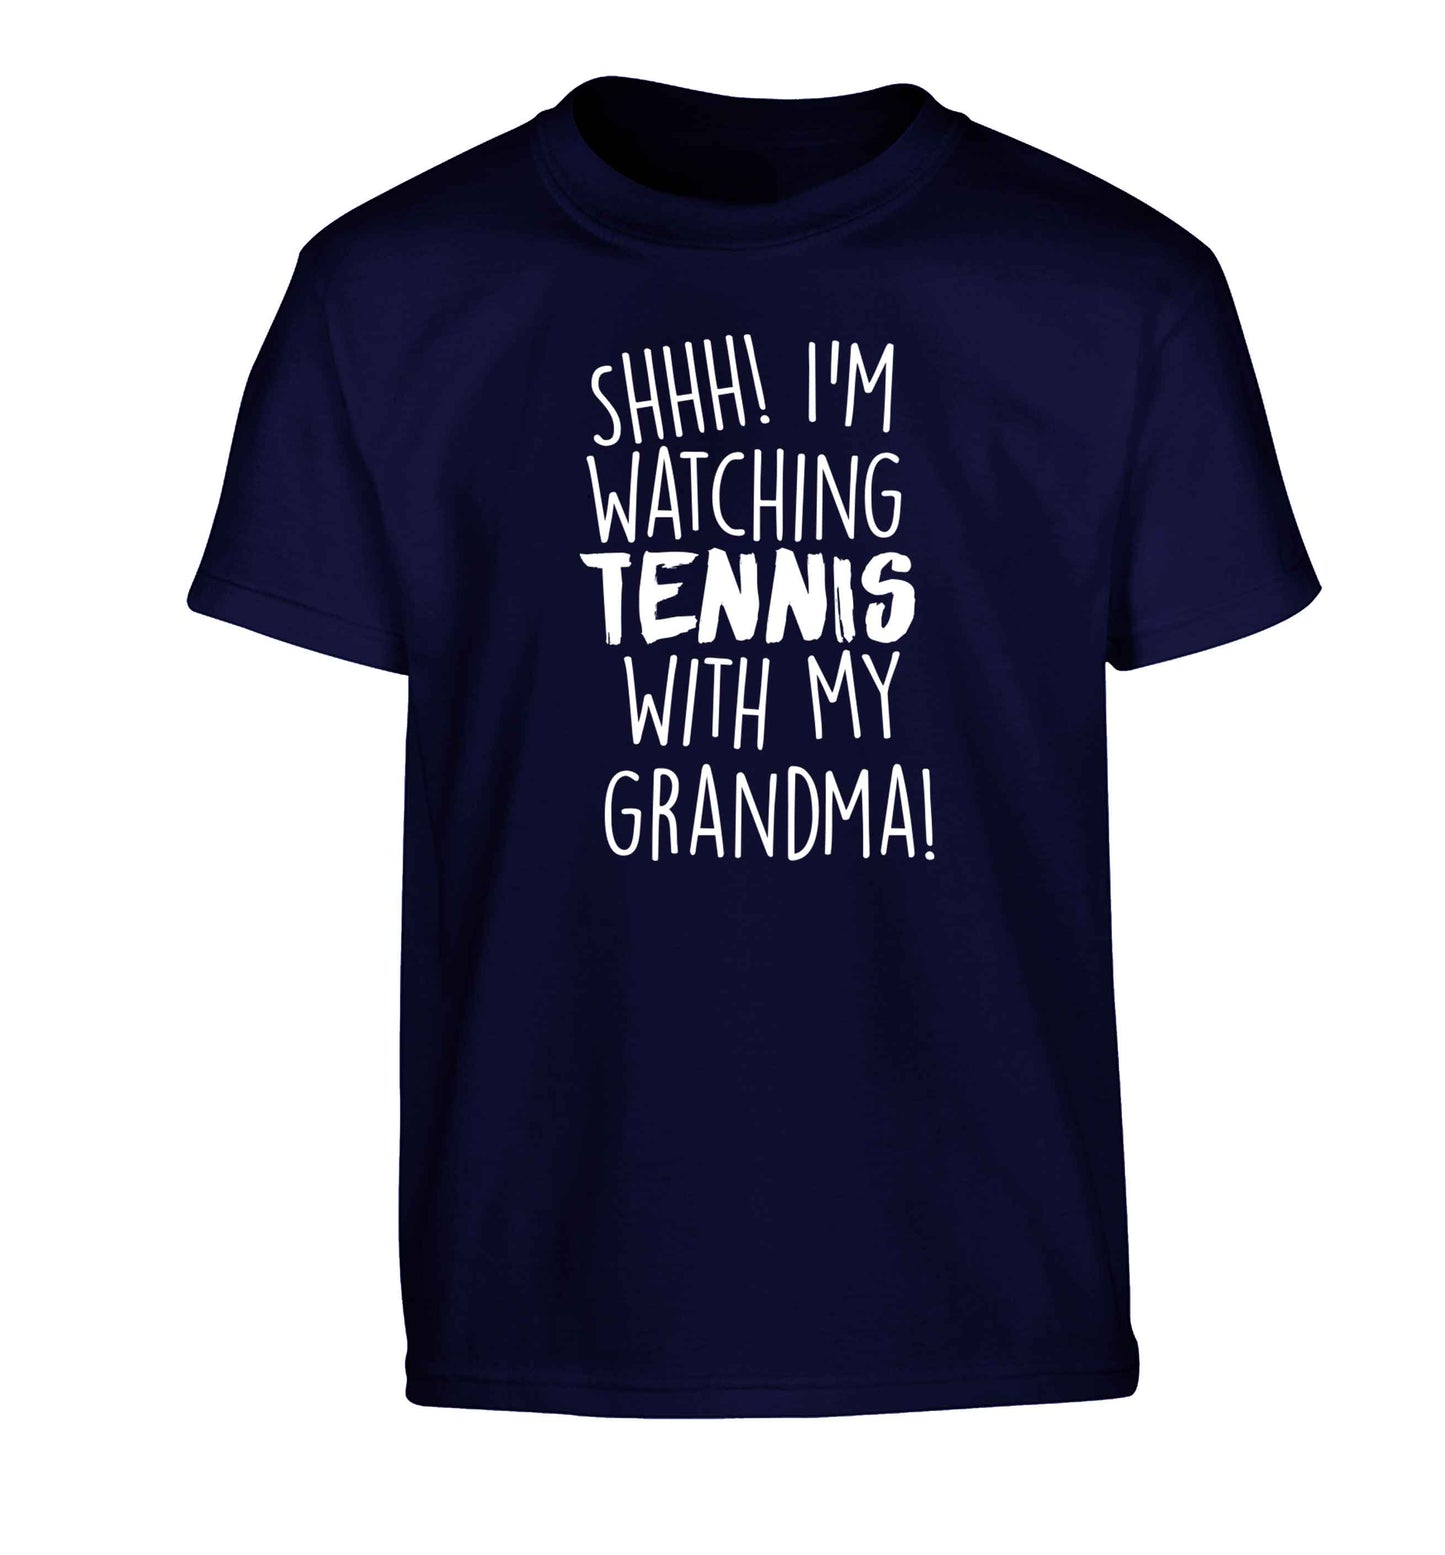 Shh! I'm watching tennis with my grandma! Children's navy Tshirt 12-13 Years